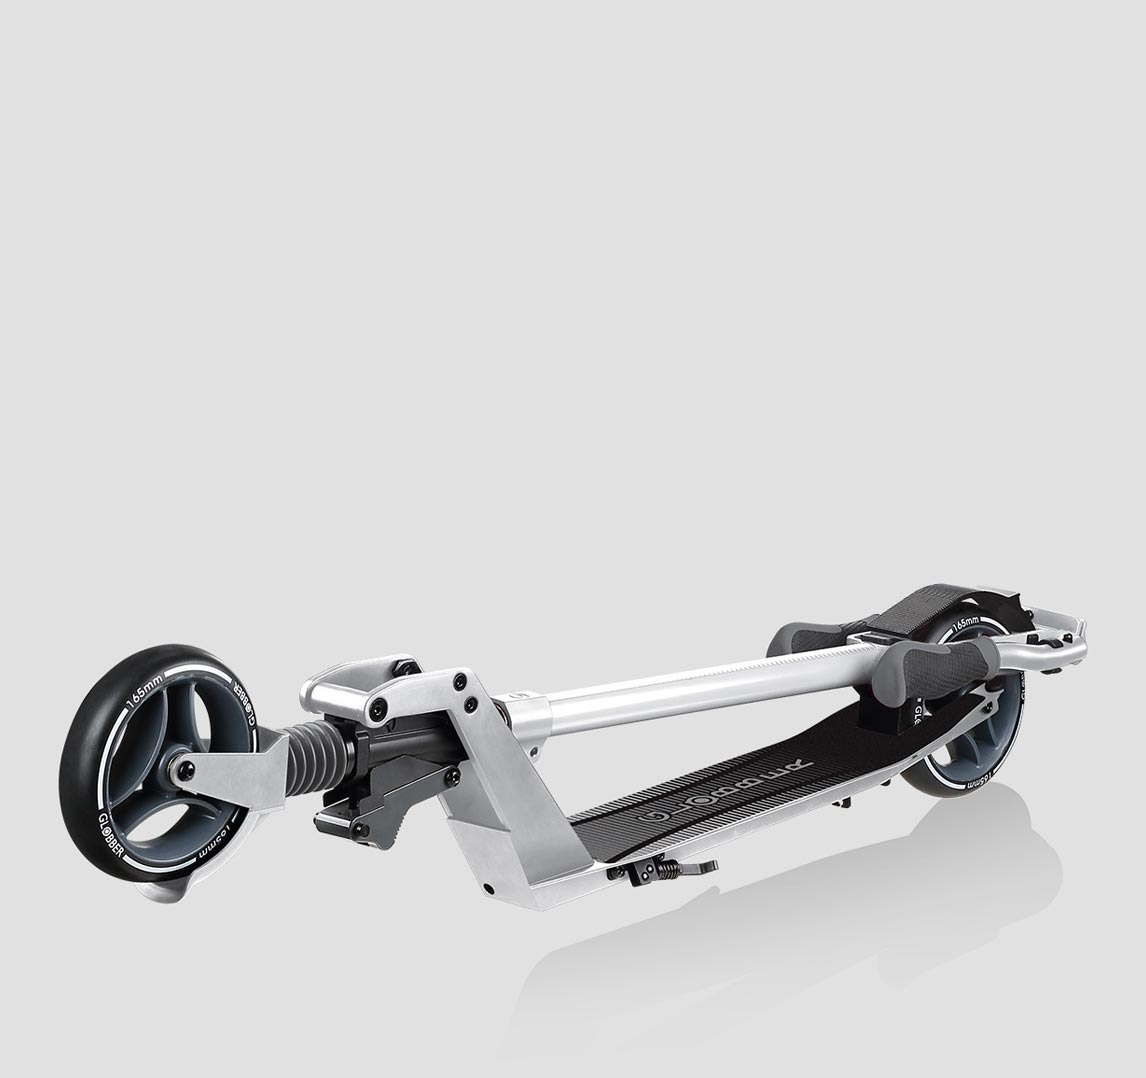 Neu konstruierter  2-rädriger Scooter  für mehr Praktikabilität und Komfort! 